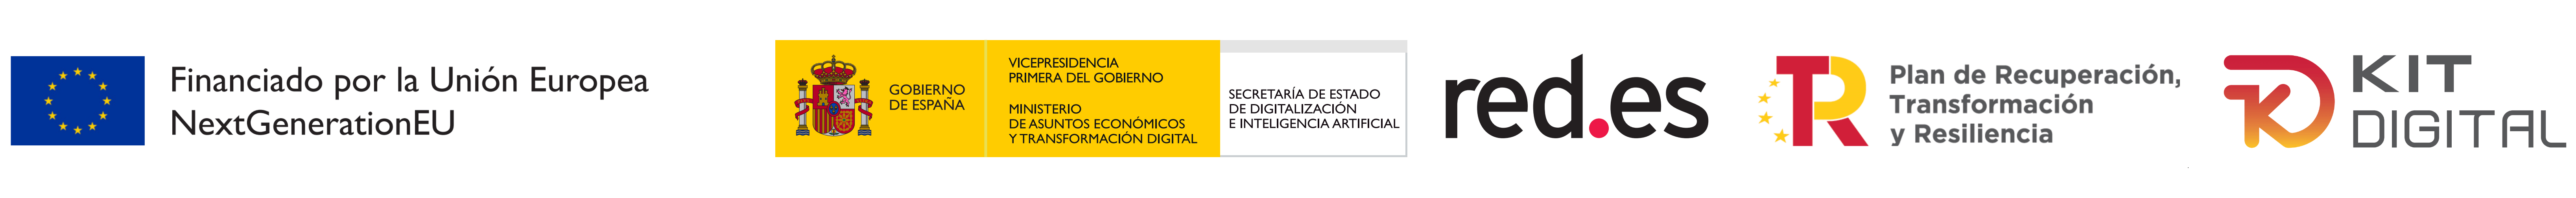 Logos del Programa Kit Digital, sitio web financiado por la Unión Europea NextGenerationEU